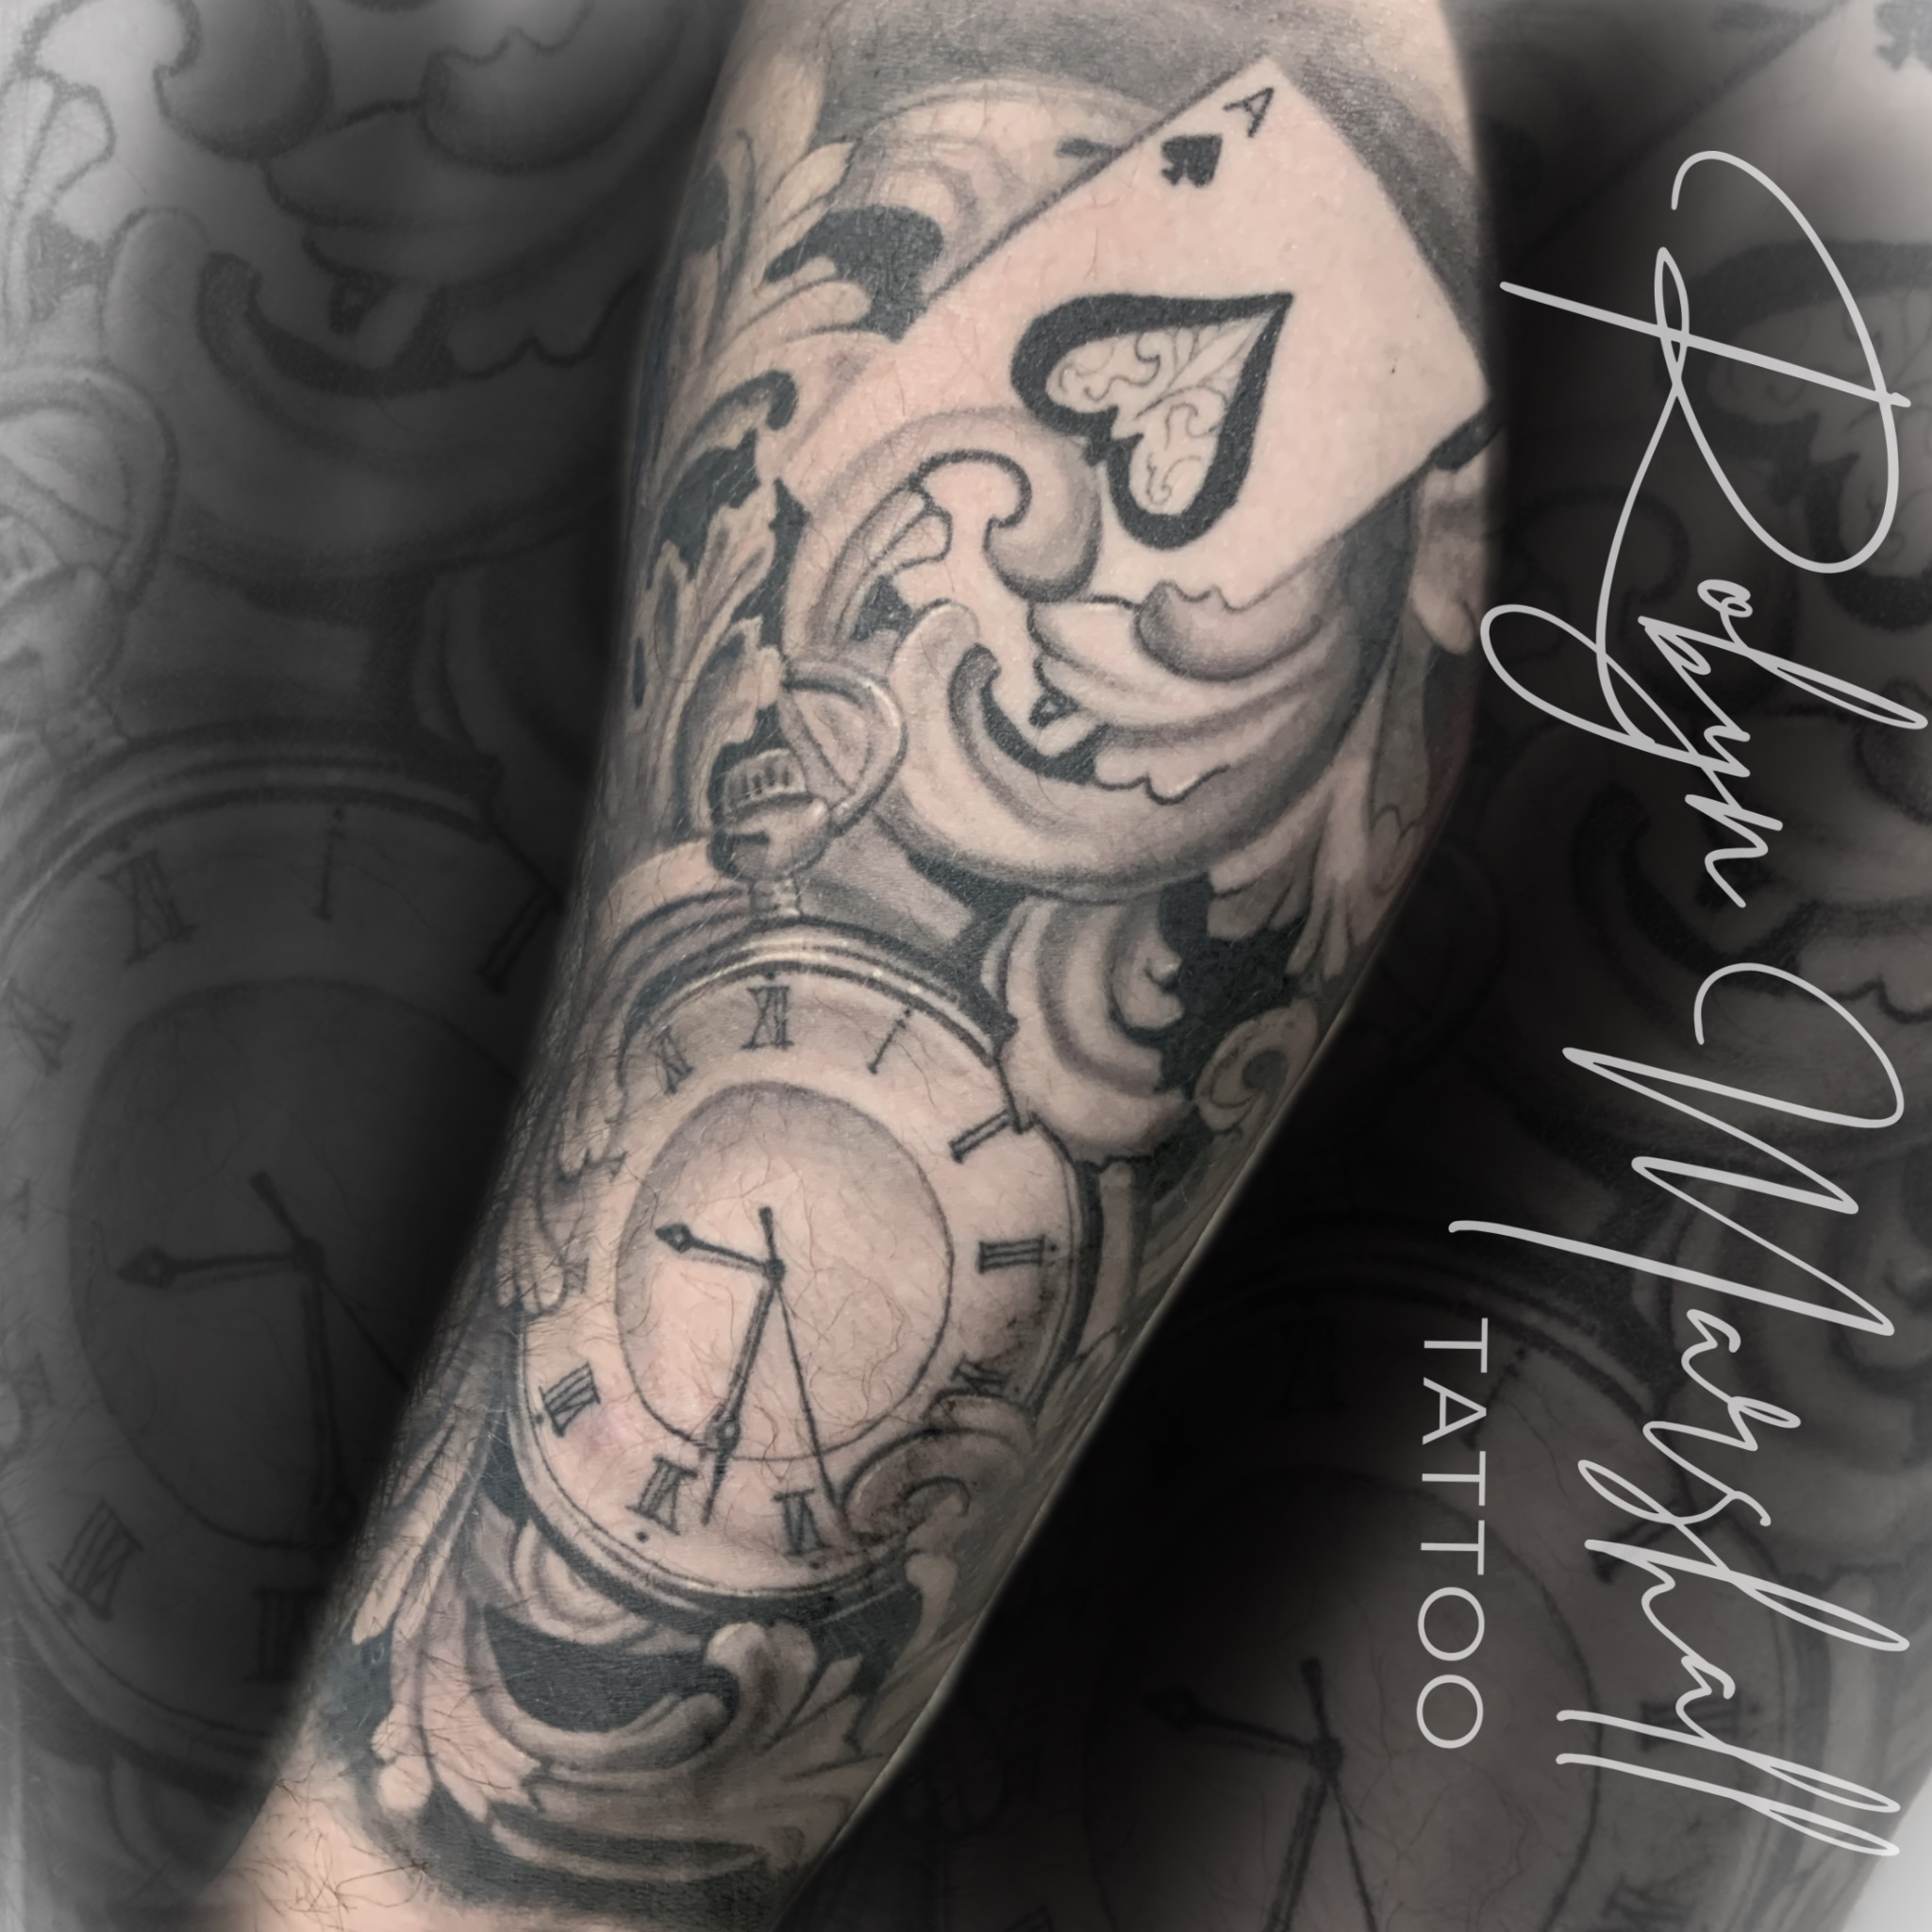 Dallas Cruz Tattoo - Tattoo Artist Chilliwack